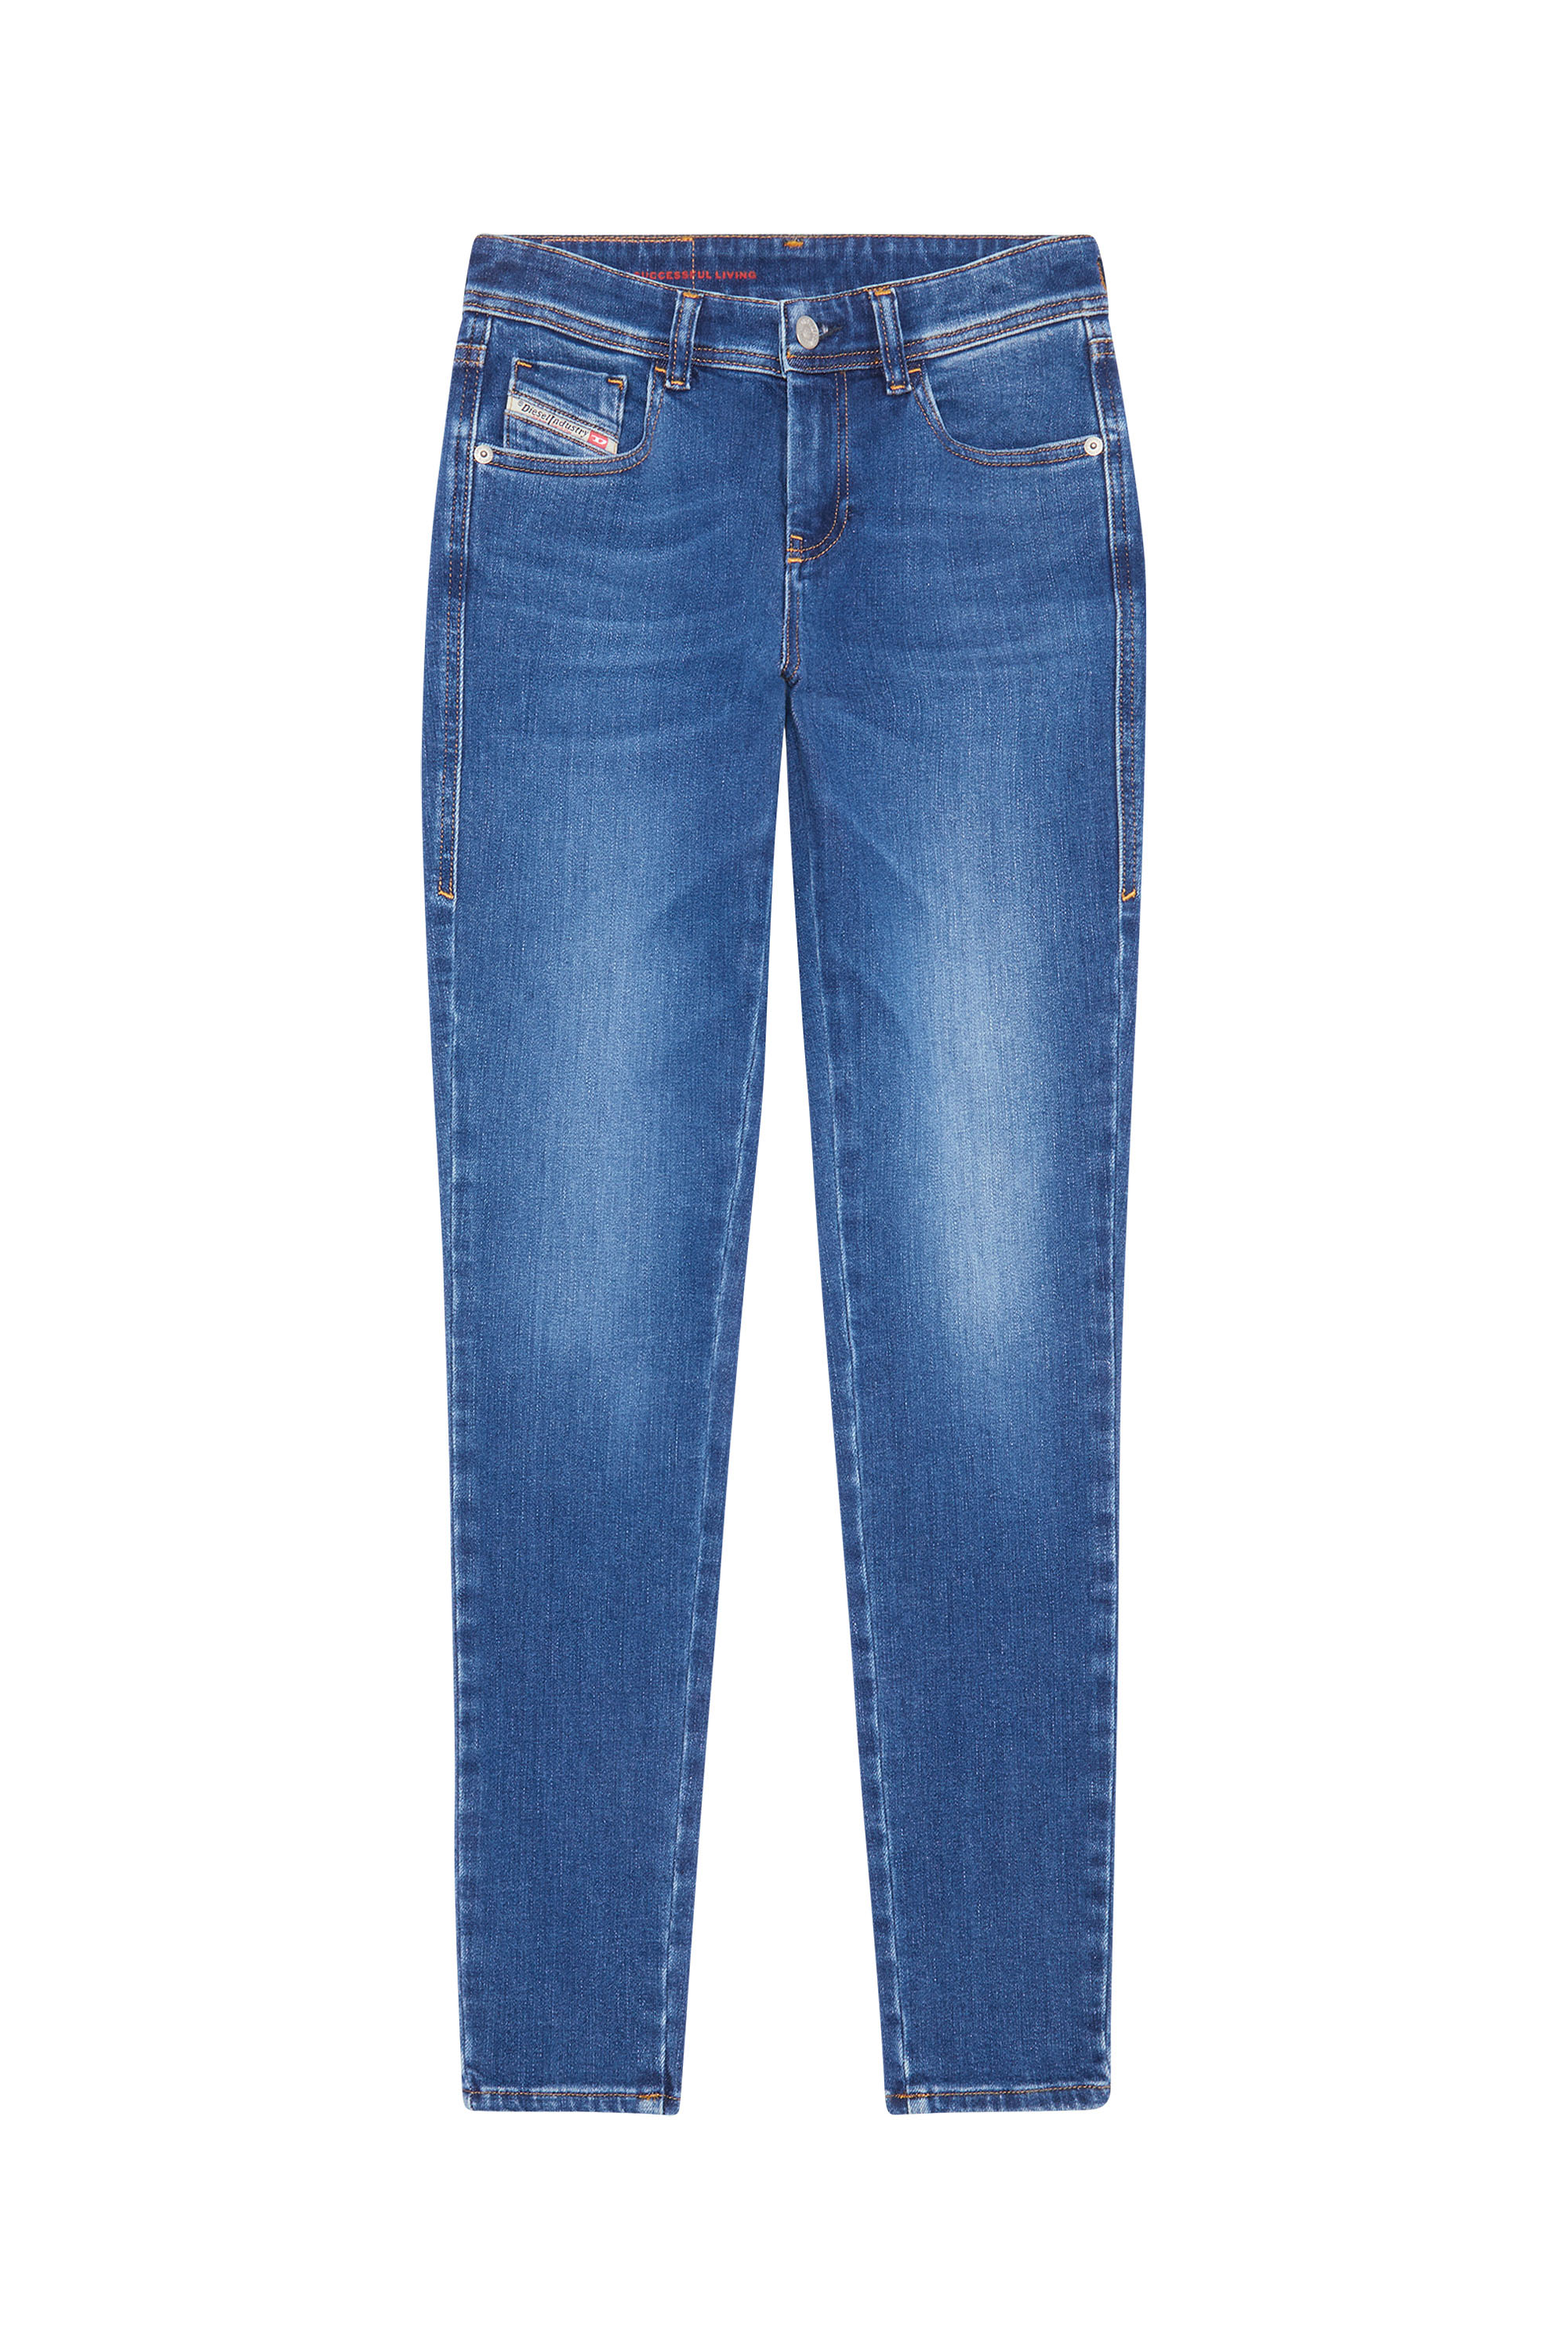 Diesel - Super skinny Jeans 2017 Slandy 09C21, Medium blue - Image 6